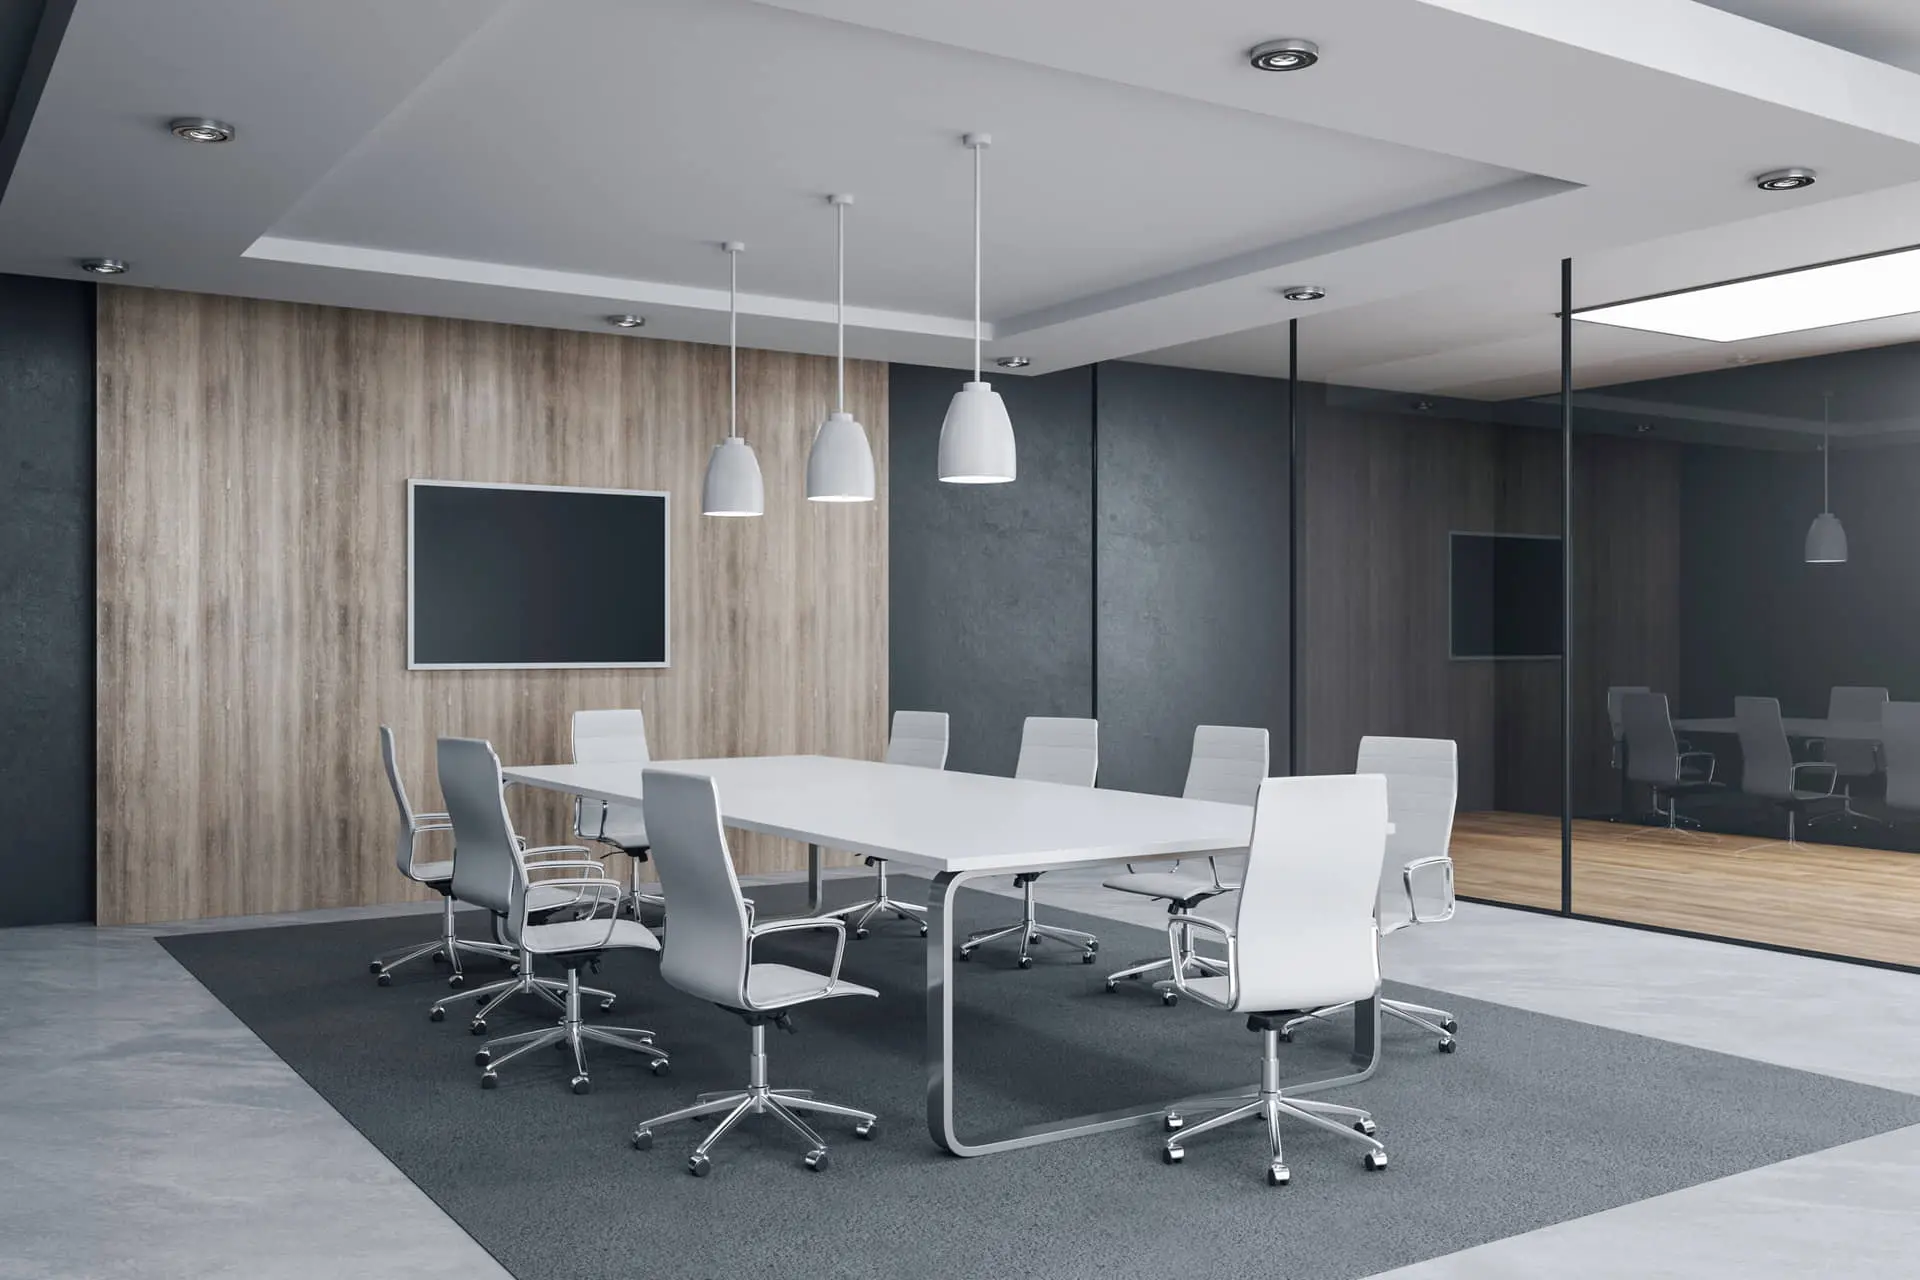 Salle de réunion avec sol en béton ciré de couleur grise